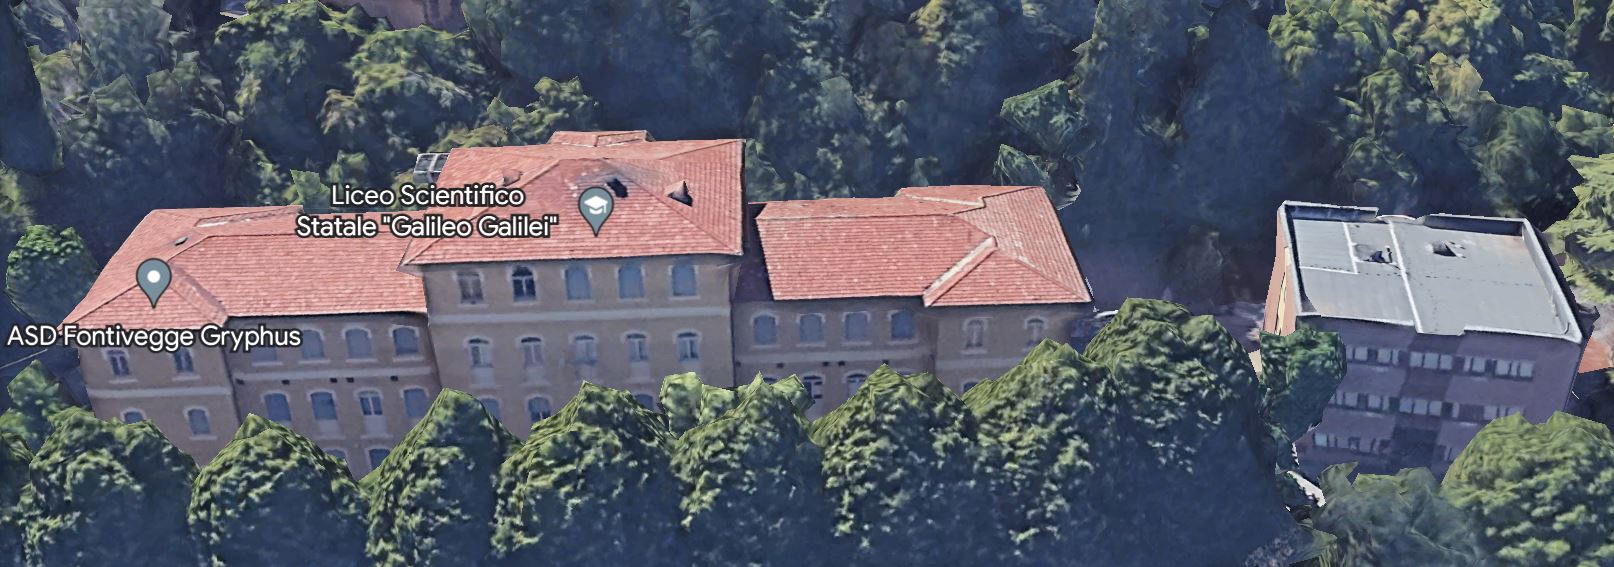 Immagine - Liceo Scientifico “Galileo Galilei”, ex Padiglione Valiano, con a destra nuova struttura, collegate fra loro da una pensilina